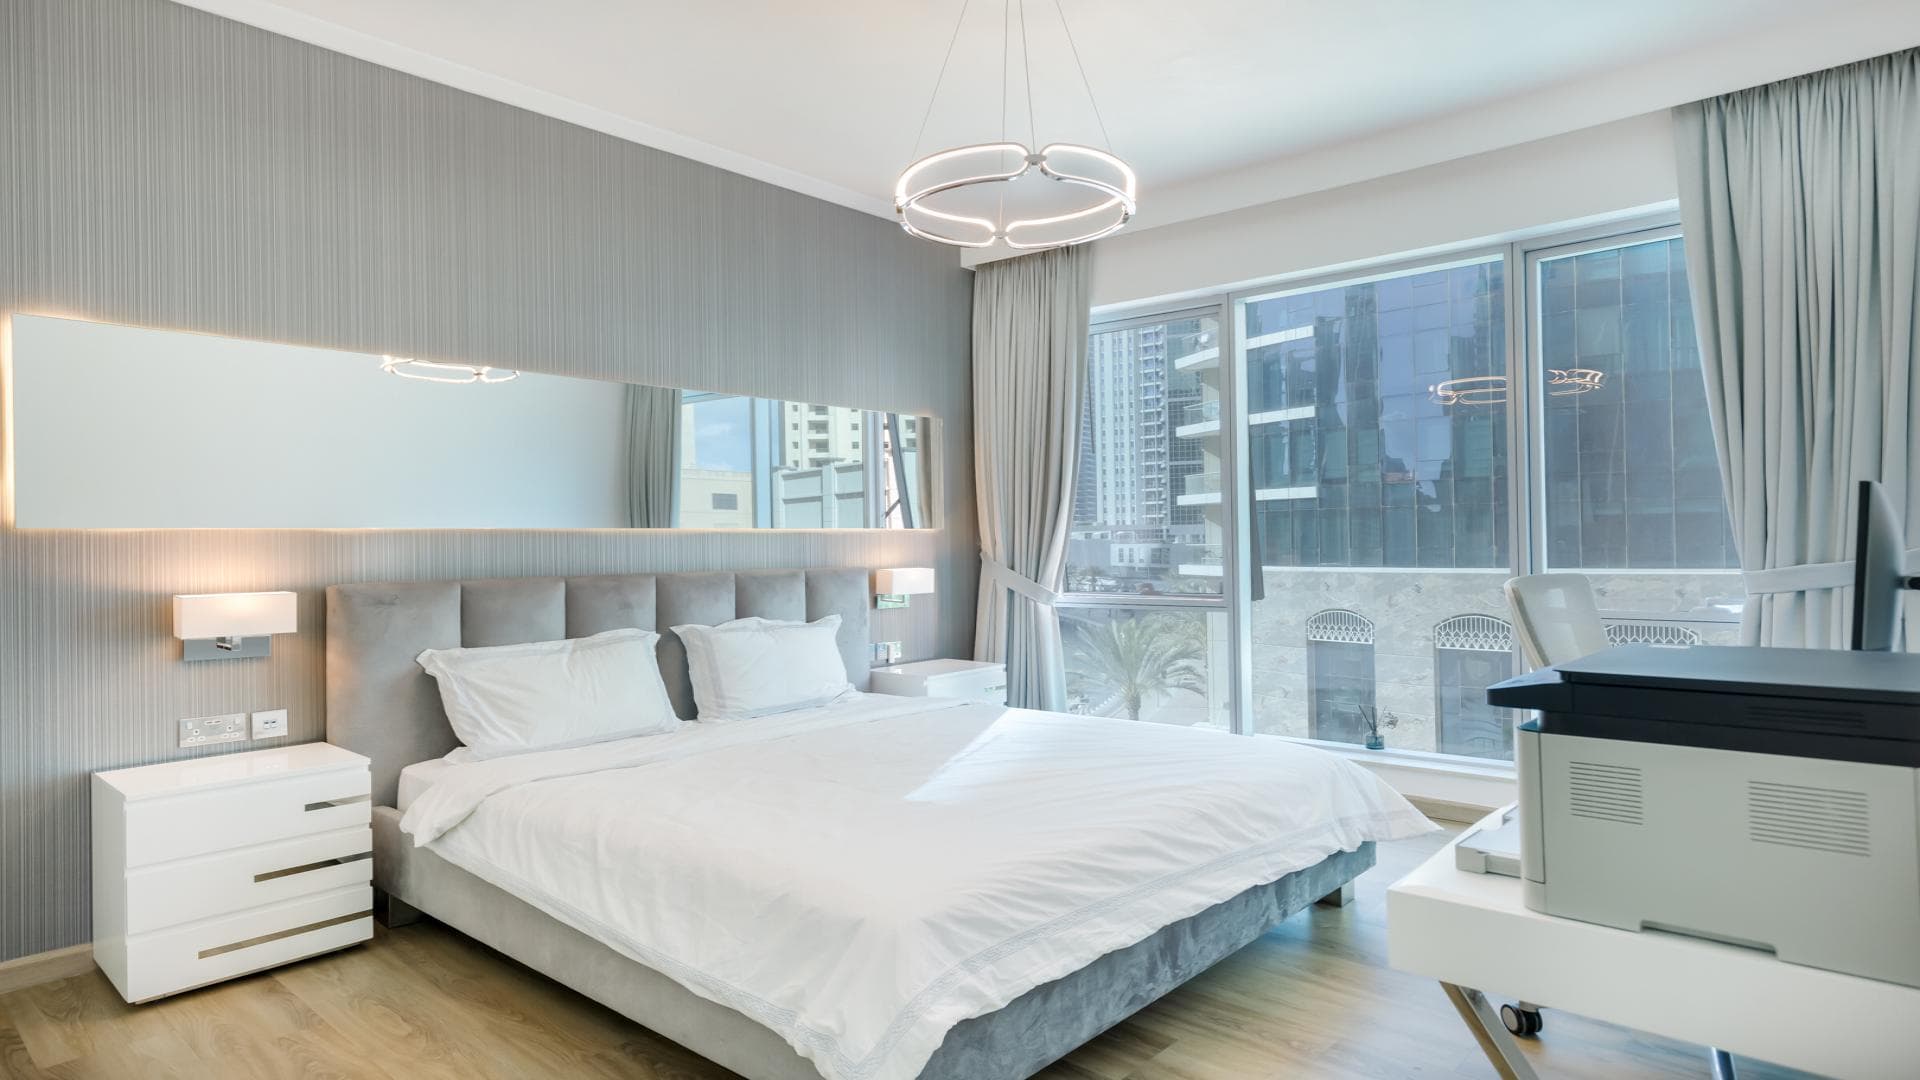 1 Bedroom Apartment For Rent Marina Promenade Lp19314 F0839821f046700.jpg